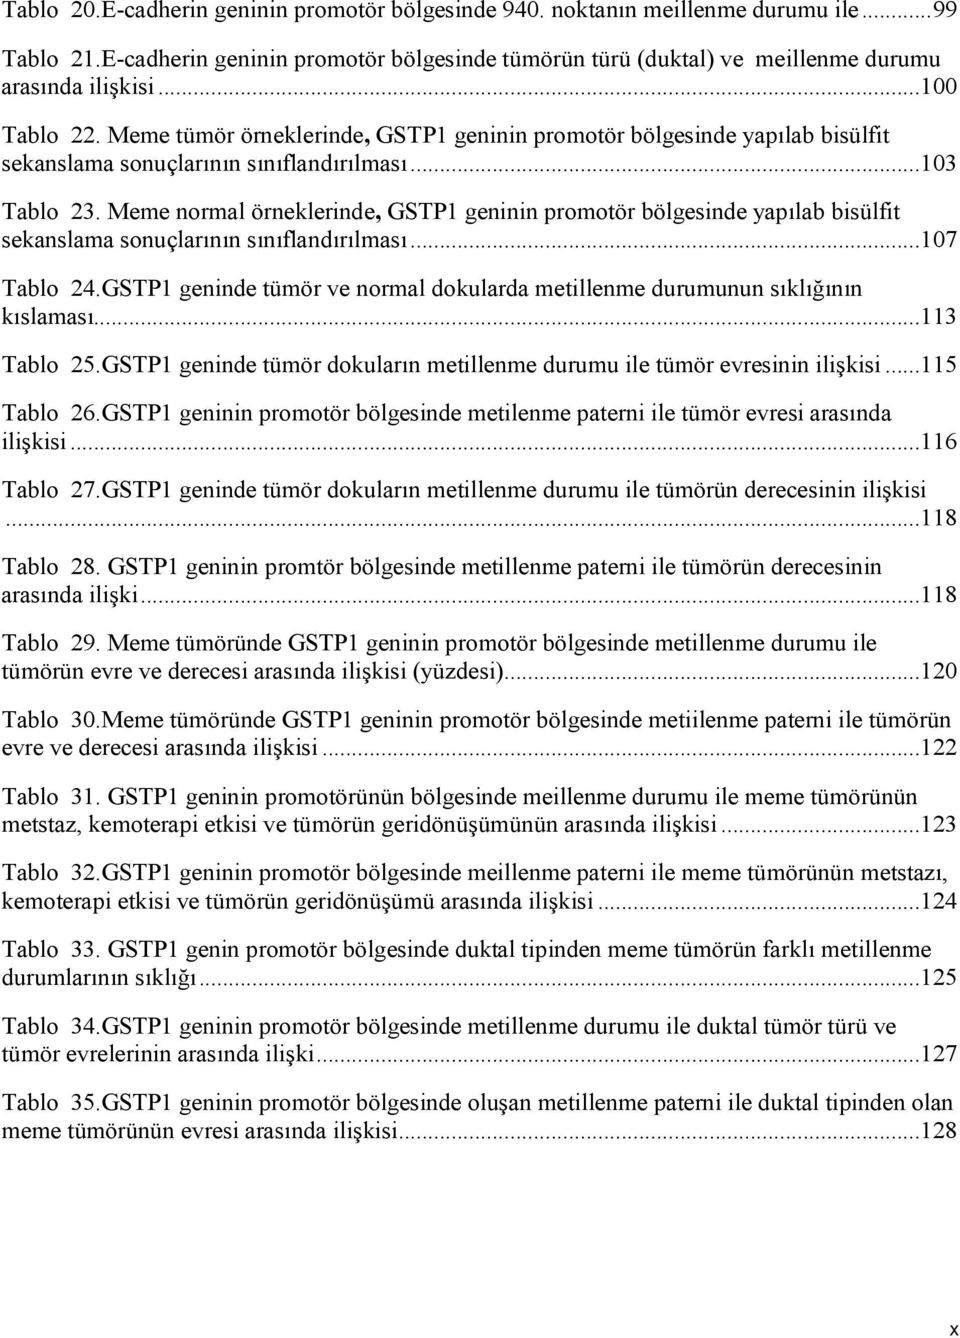 Meme normal örneklerinde, GSTP1 geninin promotör bölgesinde yapılab bisülfit sekanslama sonuçlarının sınıflandırılması...107 Tablo 24.